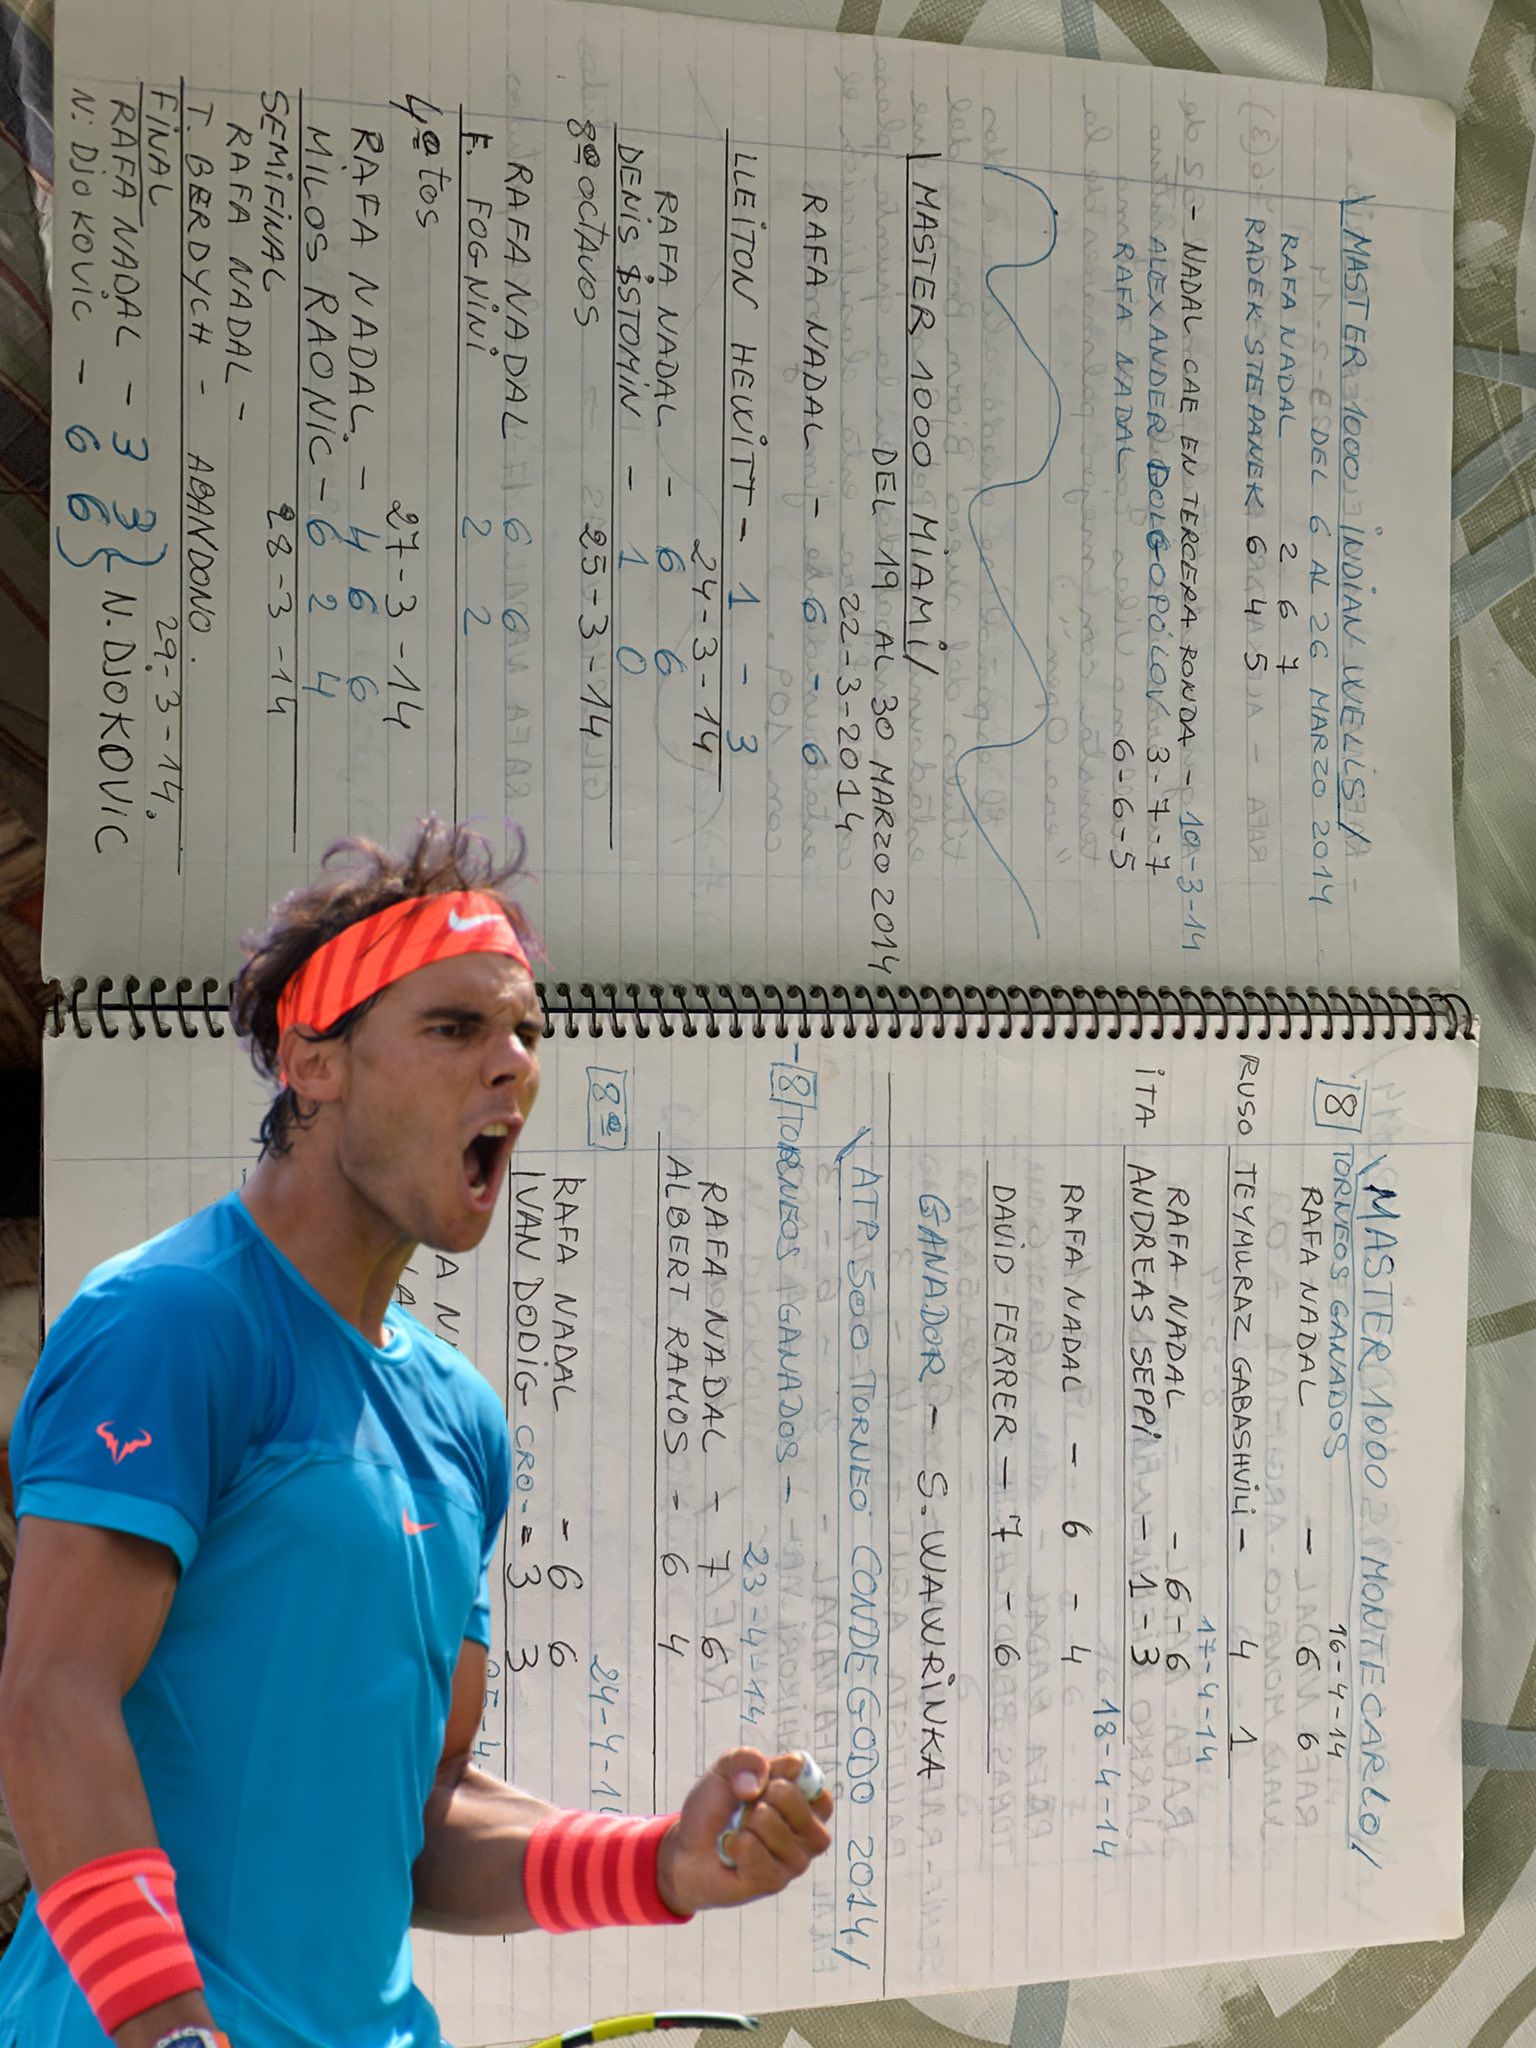 La mayor fan de Rafa Nadal: tiene 70 años y anota en una libreta todos los resultados de sus partido